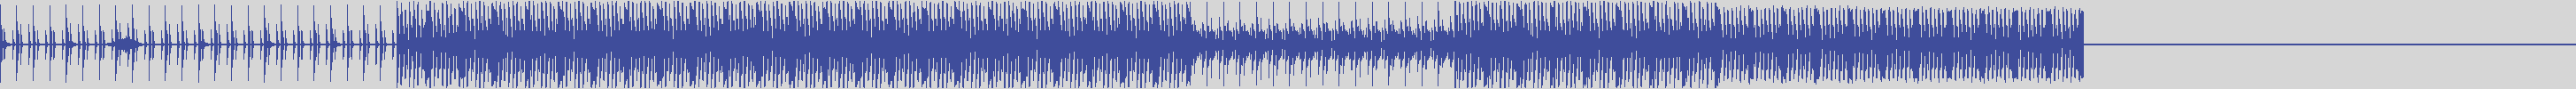 nf_boyz_records [NFY055] Lex Long - Super Plas [Tribal Edit] audio wave form